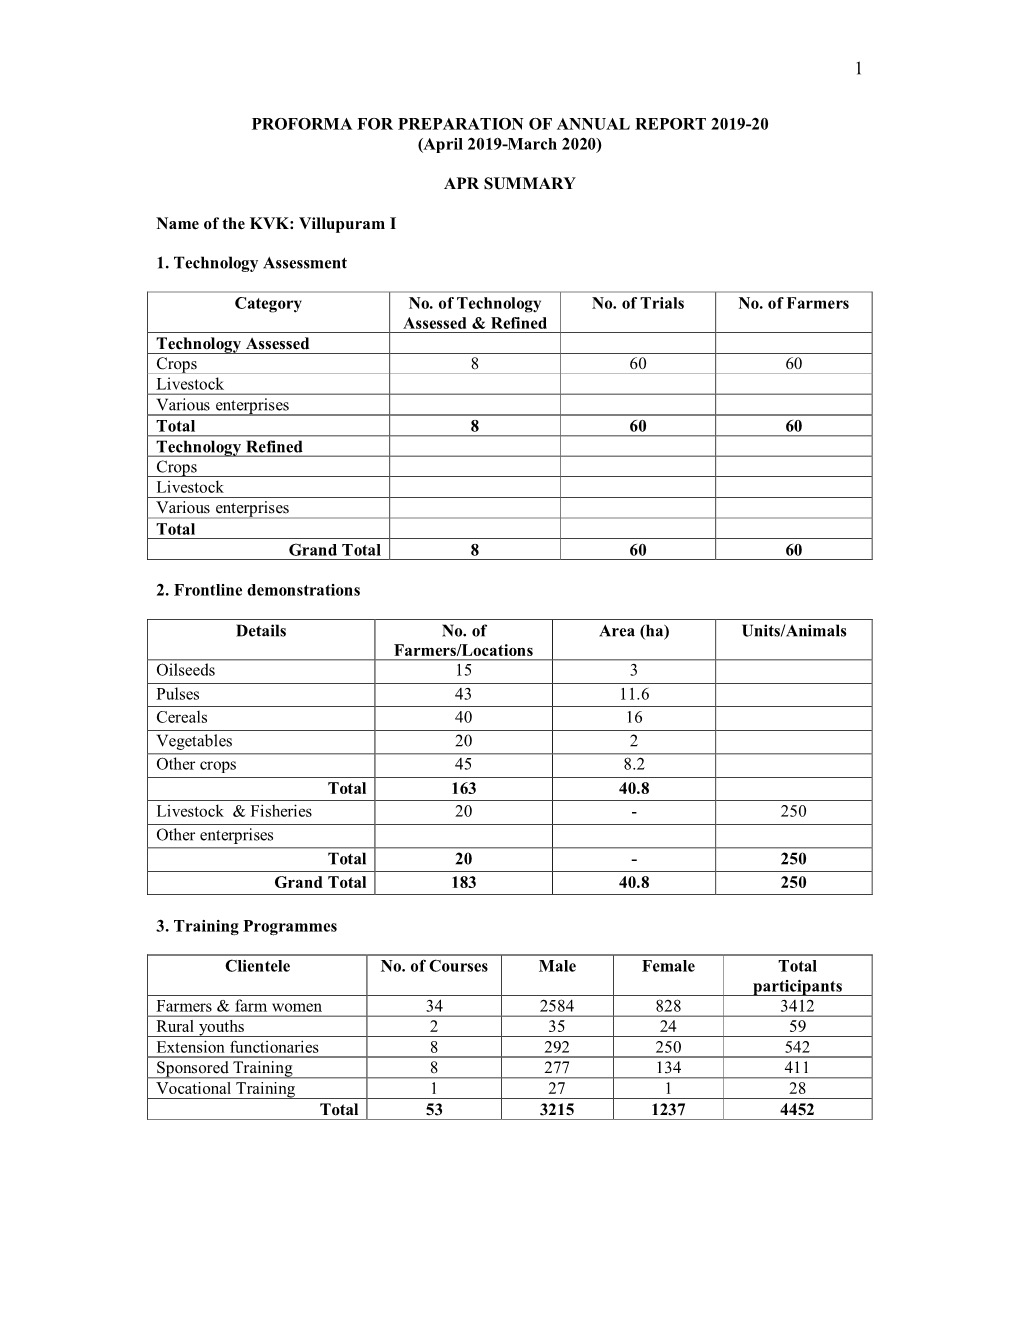 KVK-Villupuram-Annual Progress Report 2019-20